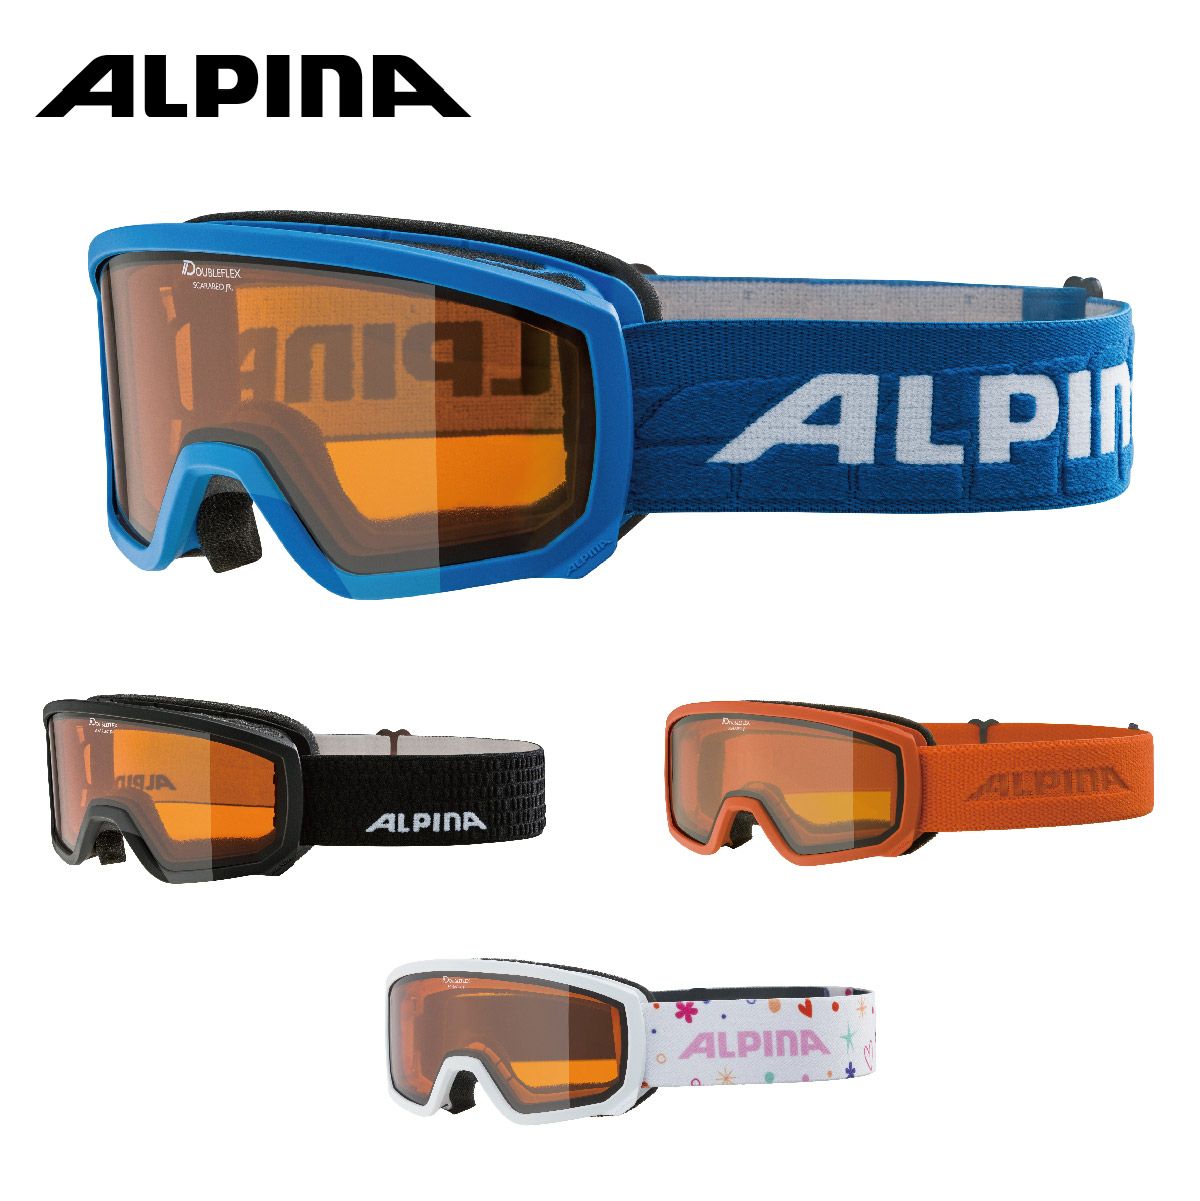 ALPINA(アルピナ) スキースノーボードゴーグル ユニセックス マグネット式着脱ミラーレンズ 偏光 メガネ使用可 DOUBLE JACK